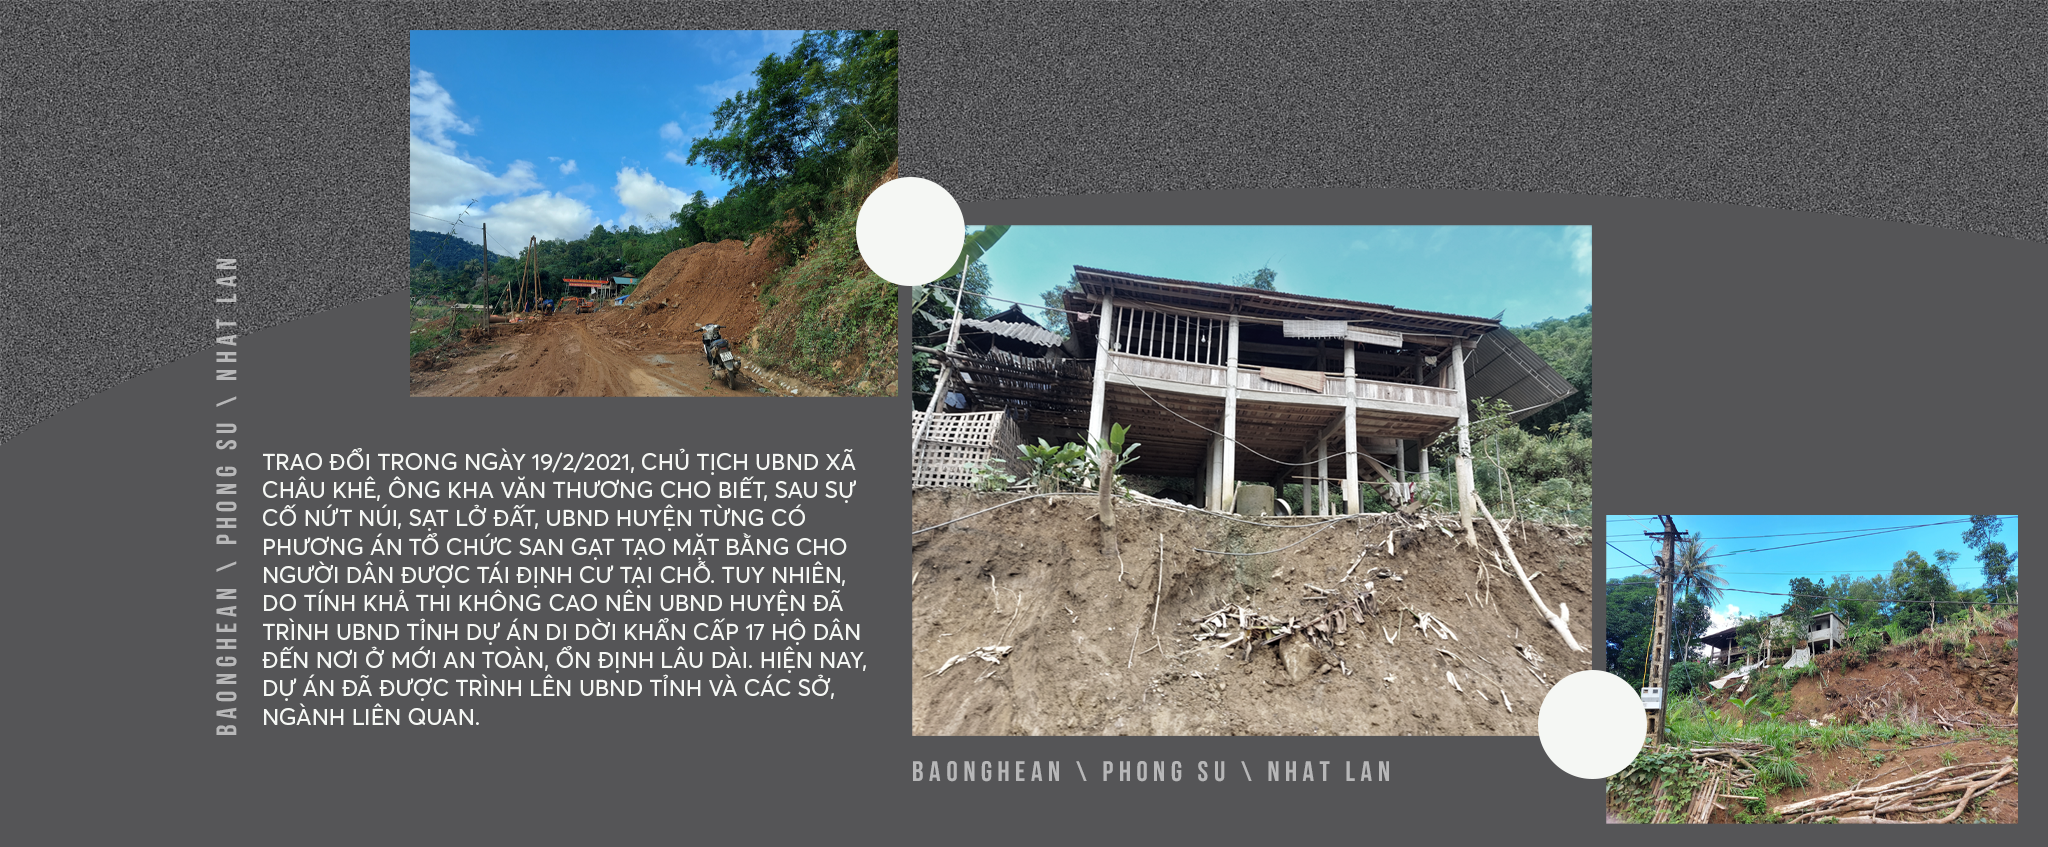 Tình trạng nứt đồi, sạt lở đất ở khu vực bản Bủng Xát, xã Châu Khê.